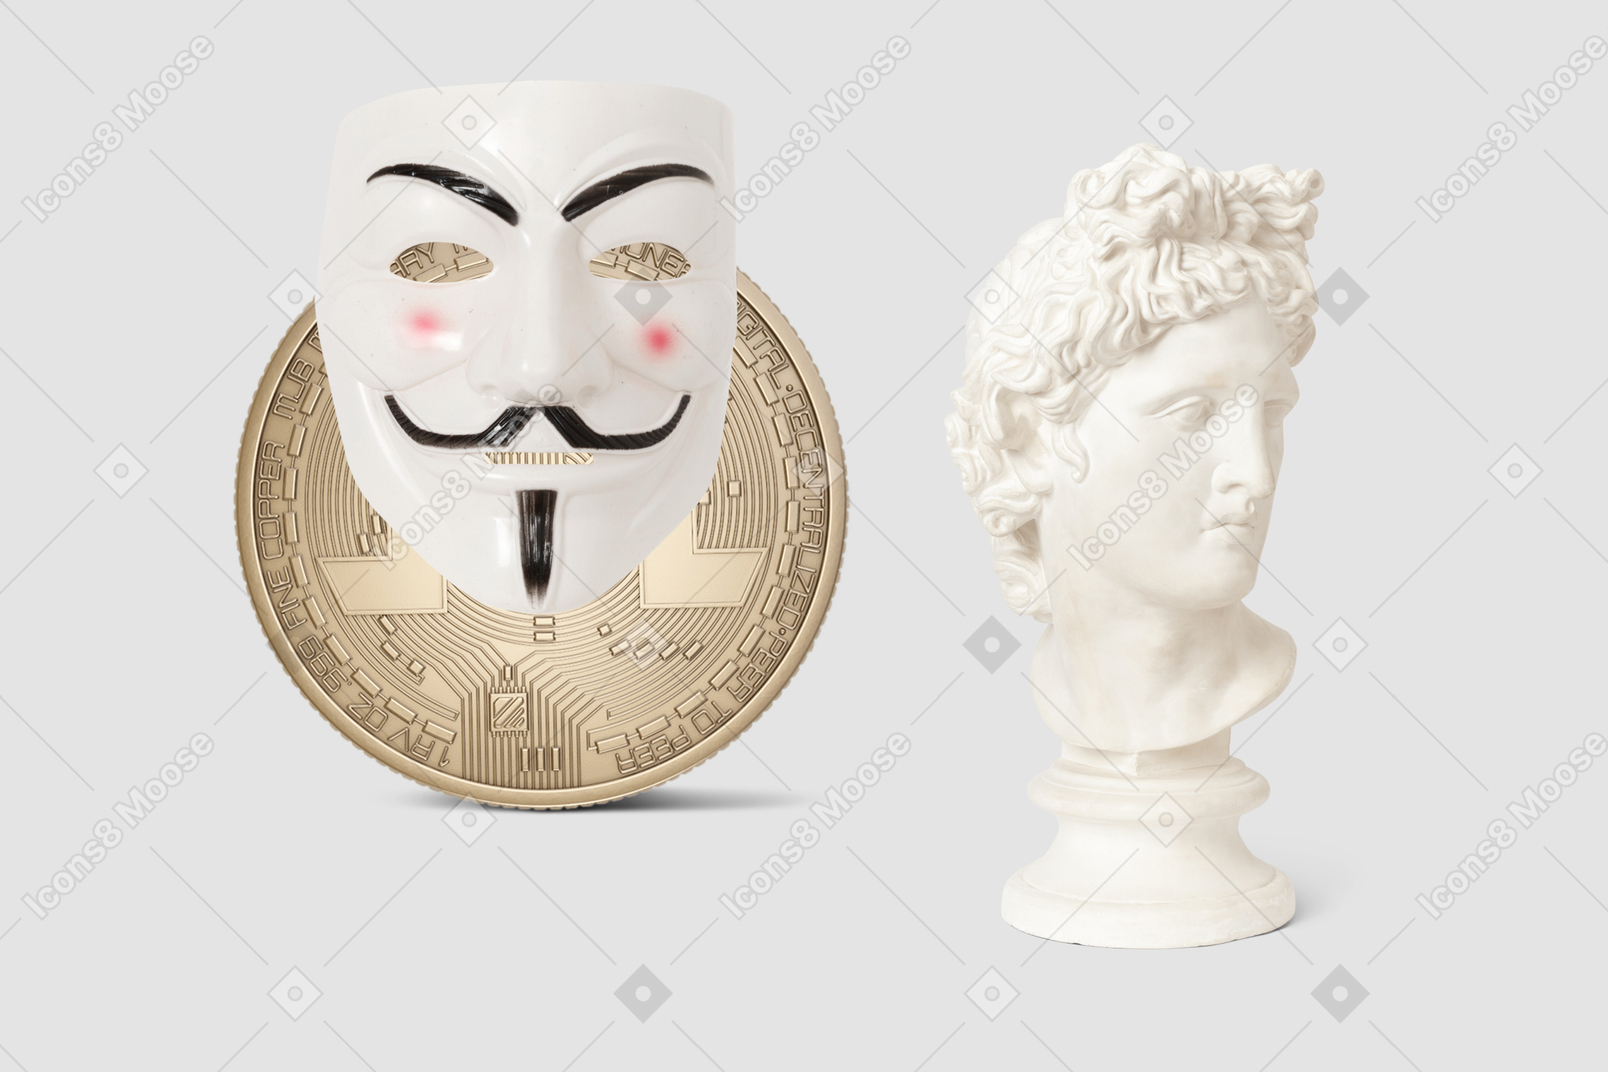 Statuenbüste, anonyme maske und bitcoin